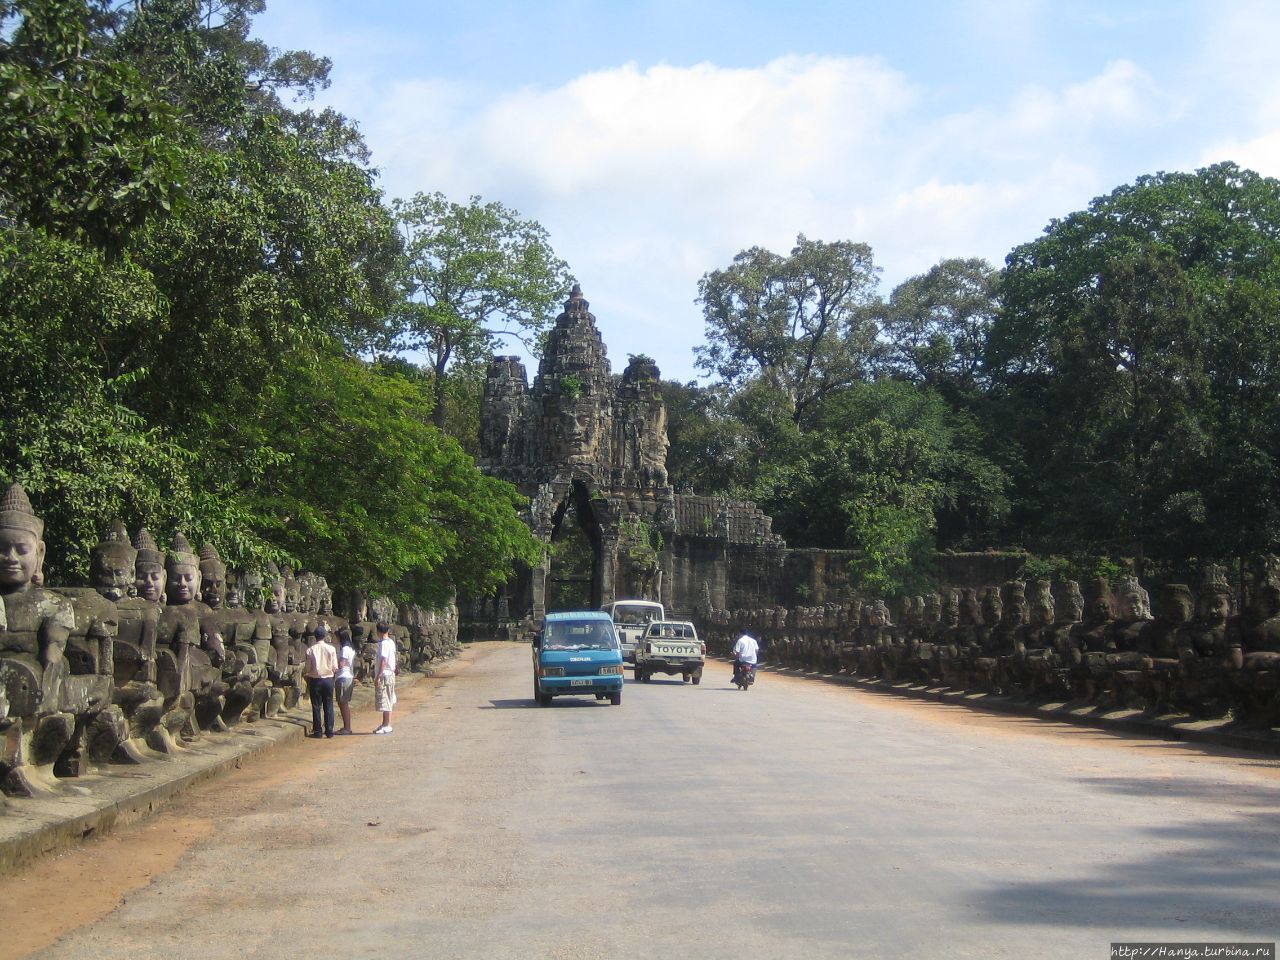 Южные ворота, ведущие в Ангкор Том